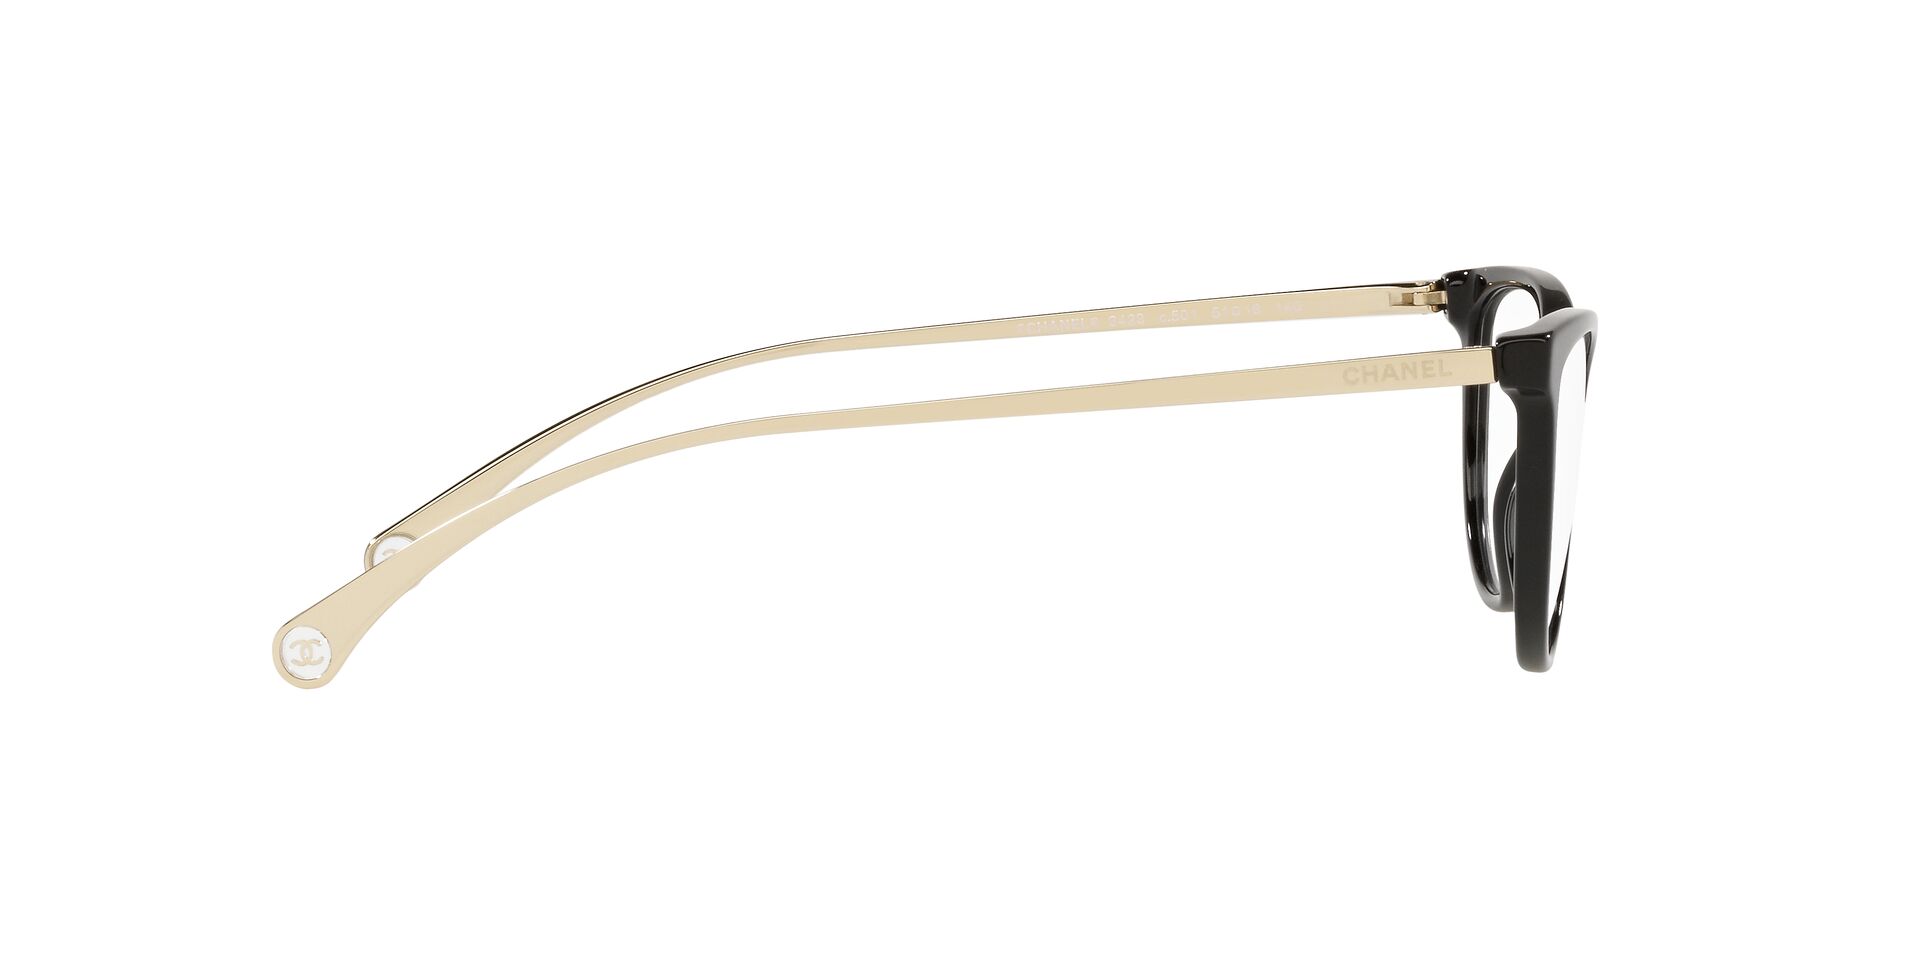 CHANEL 3295-B-A c.501 Eyewear BNIB New FRAMES Eyeglasses